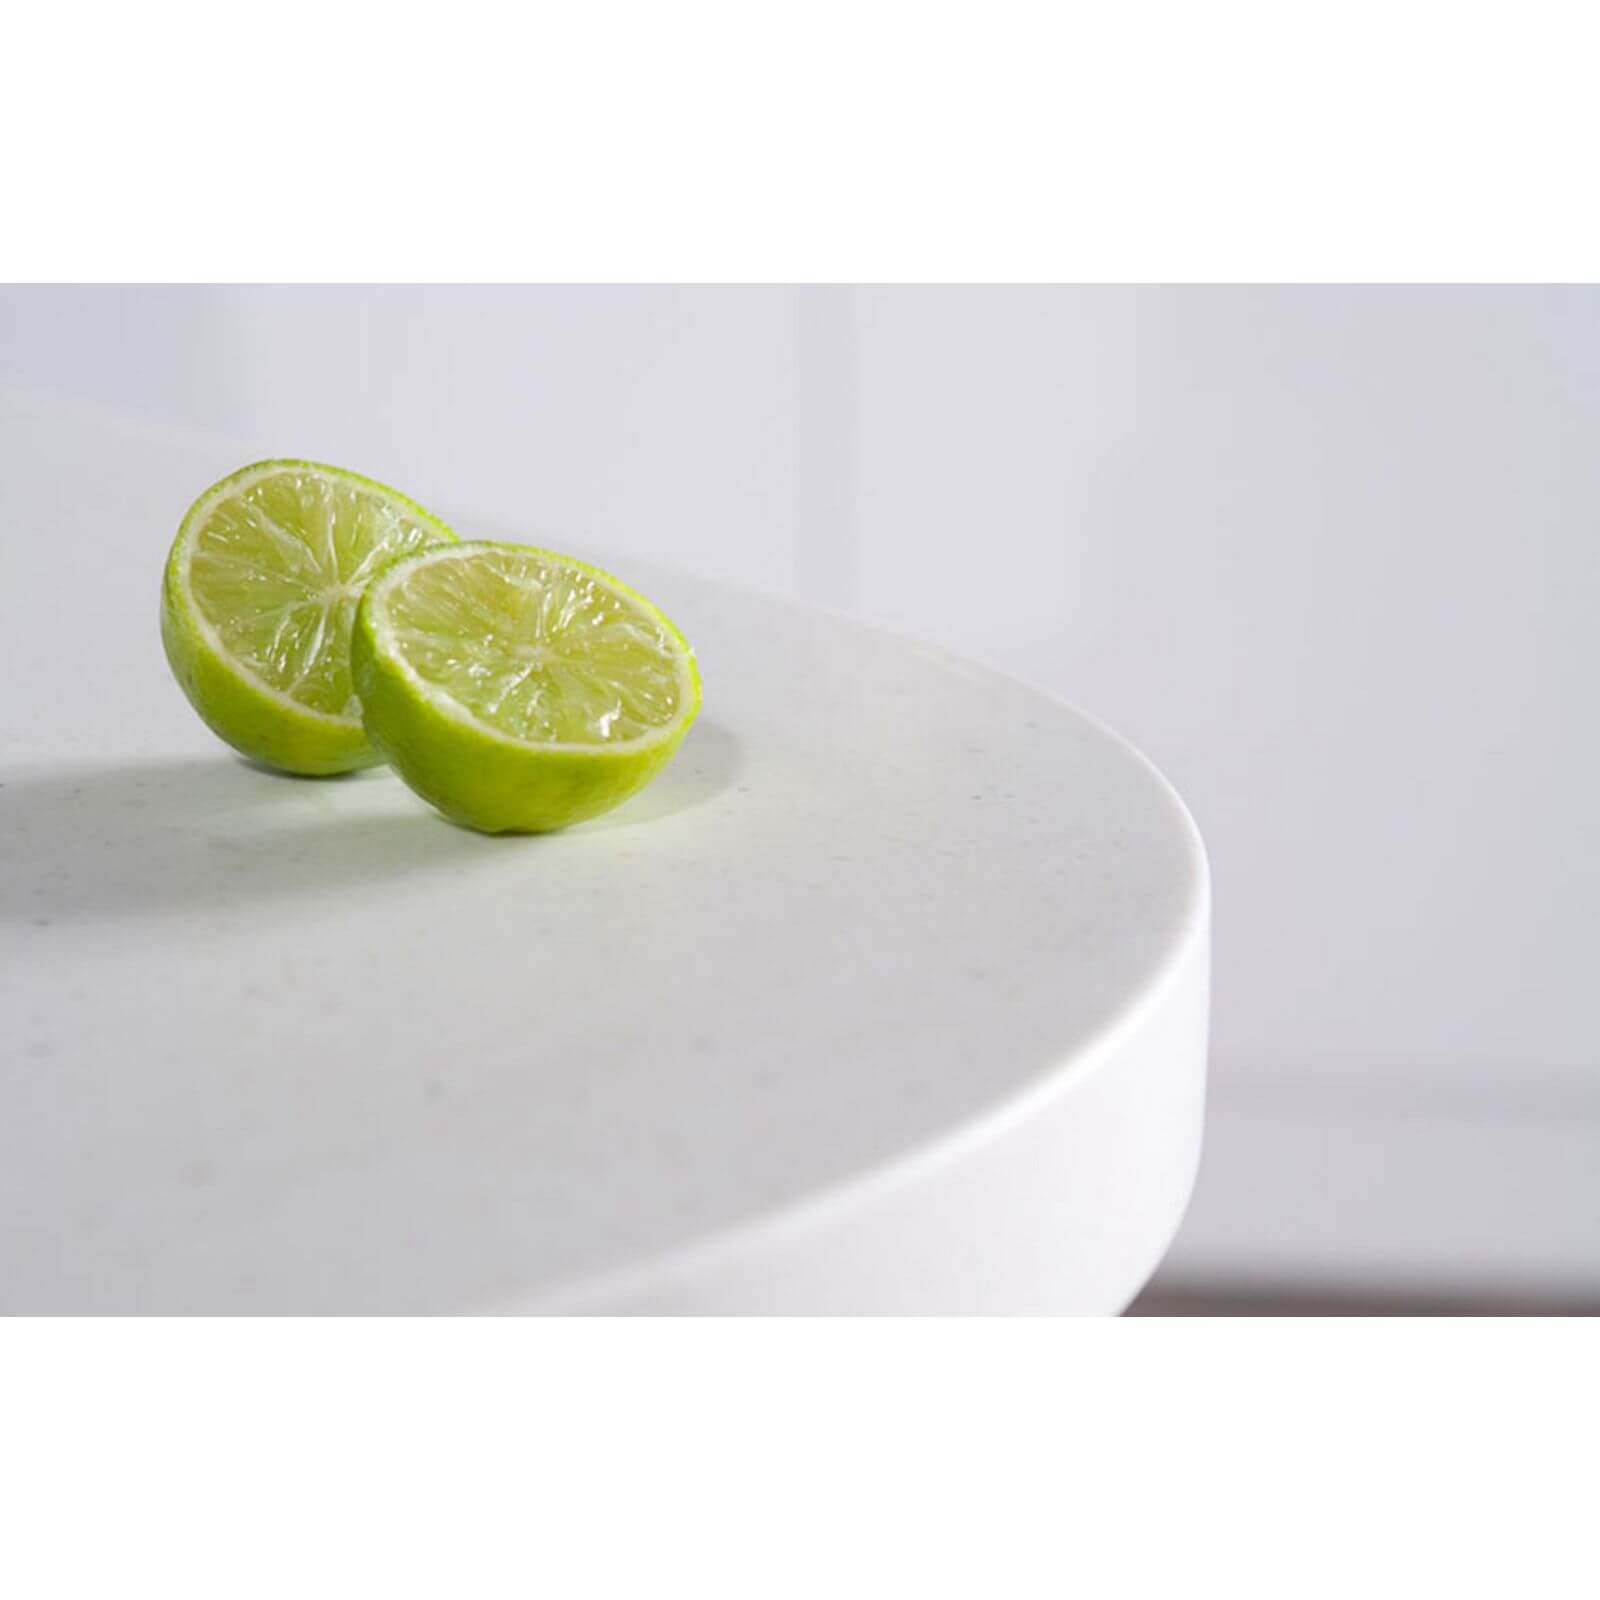 Maia Calcite Kitchen Sink Worktop - 1.5 Designer Right Hand Bowl - 3600 x 650 x 42mm